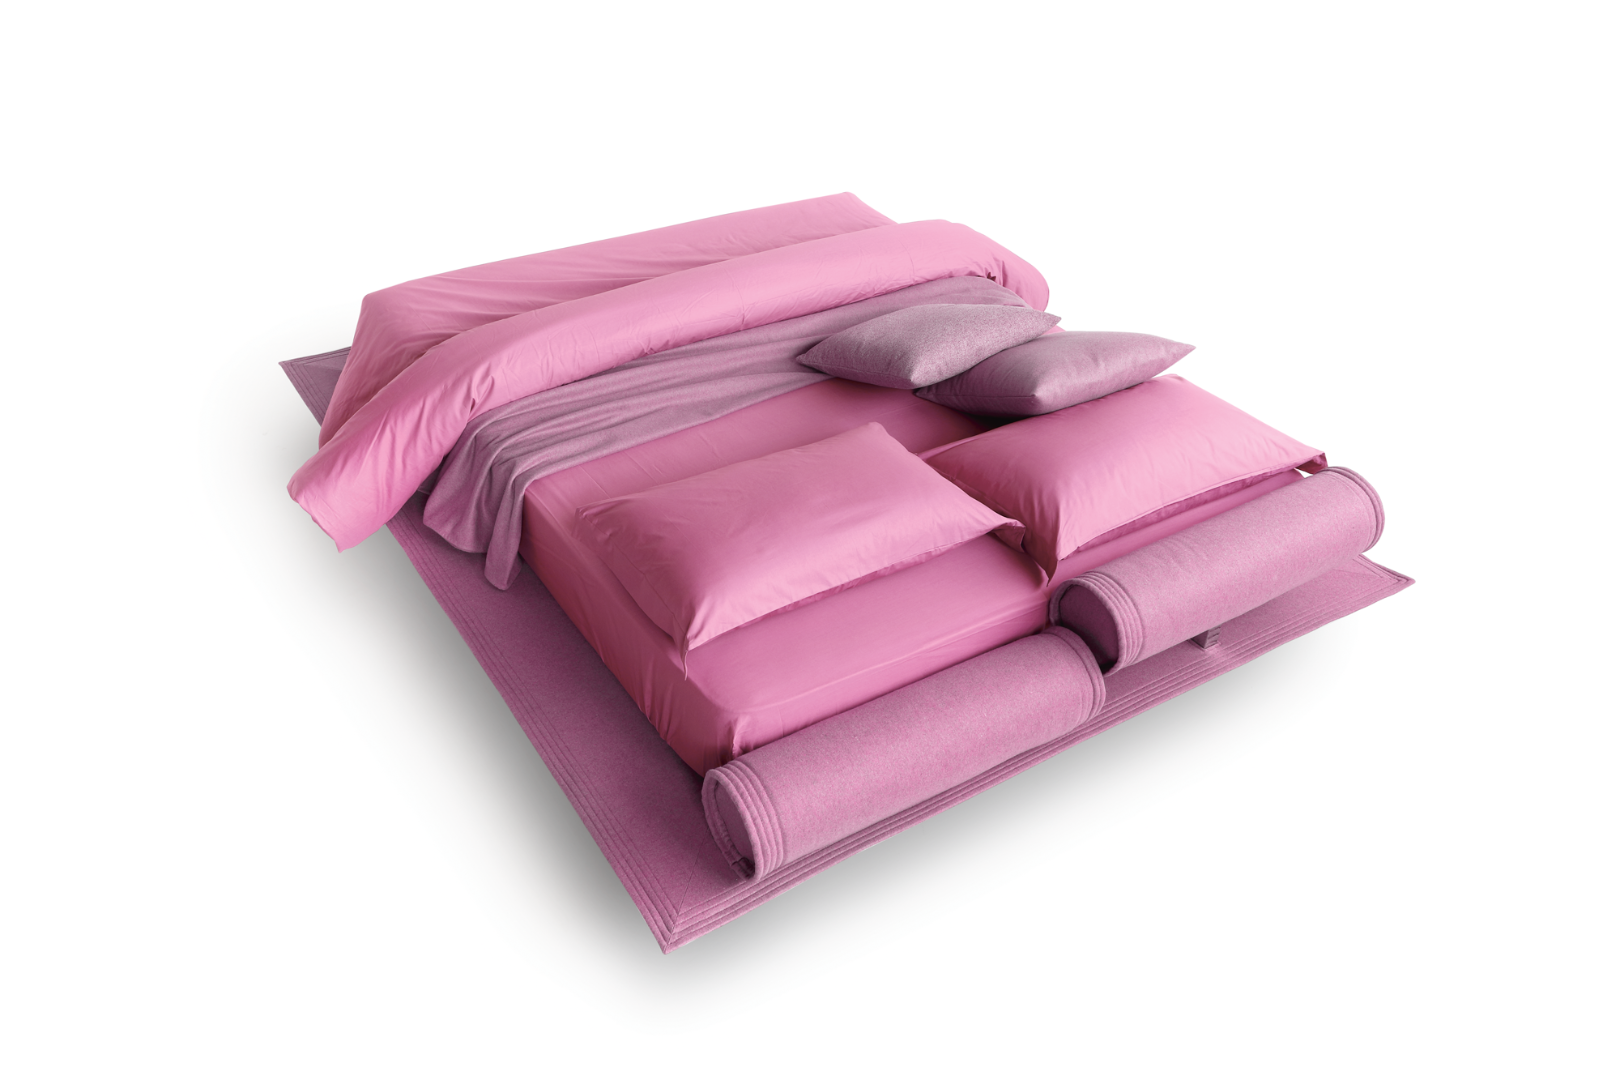 Кровать Flamingo — ₽, купить у официального дилера Nicolettihome